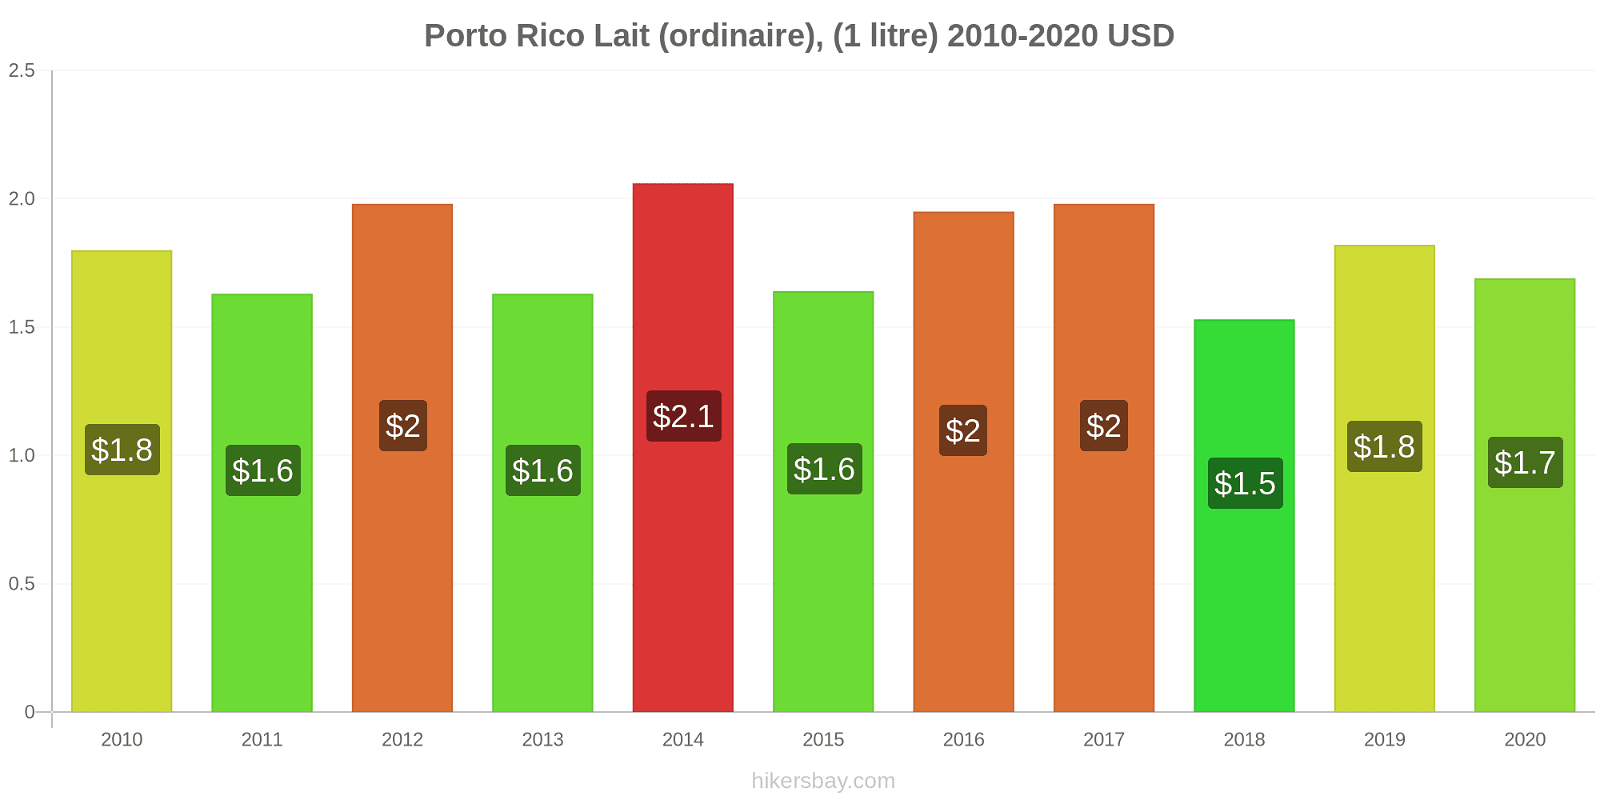 Porto Rico changements de prix (Régulier), lait (1 litre) hikersbay.com